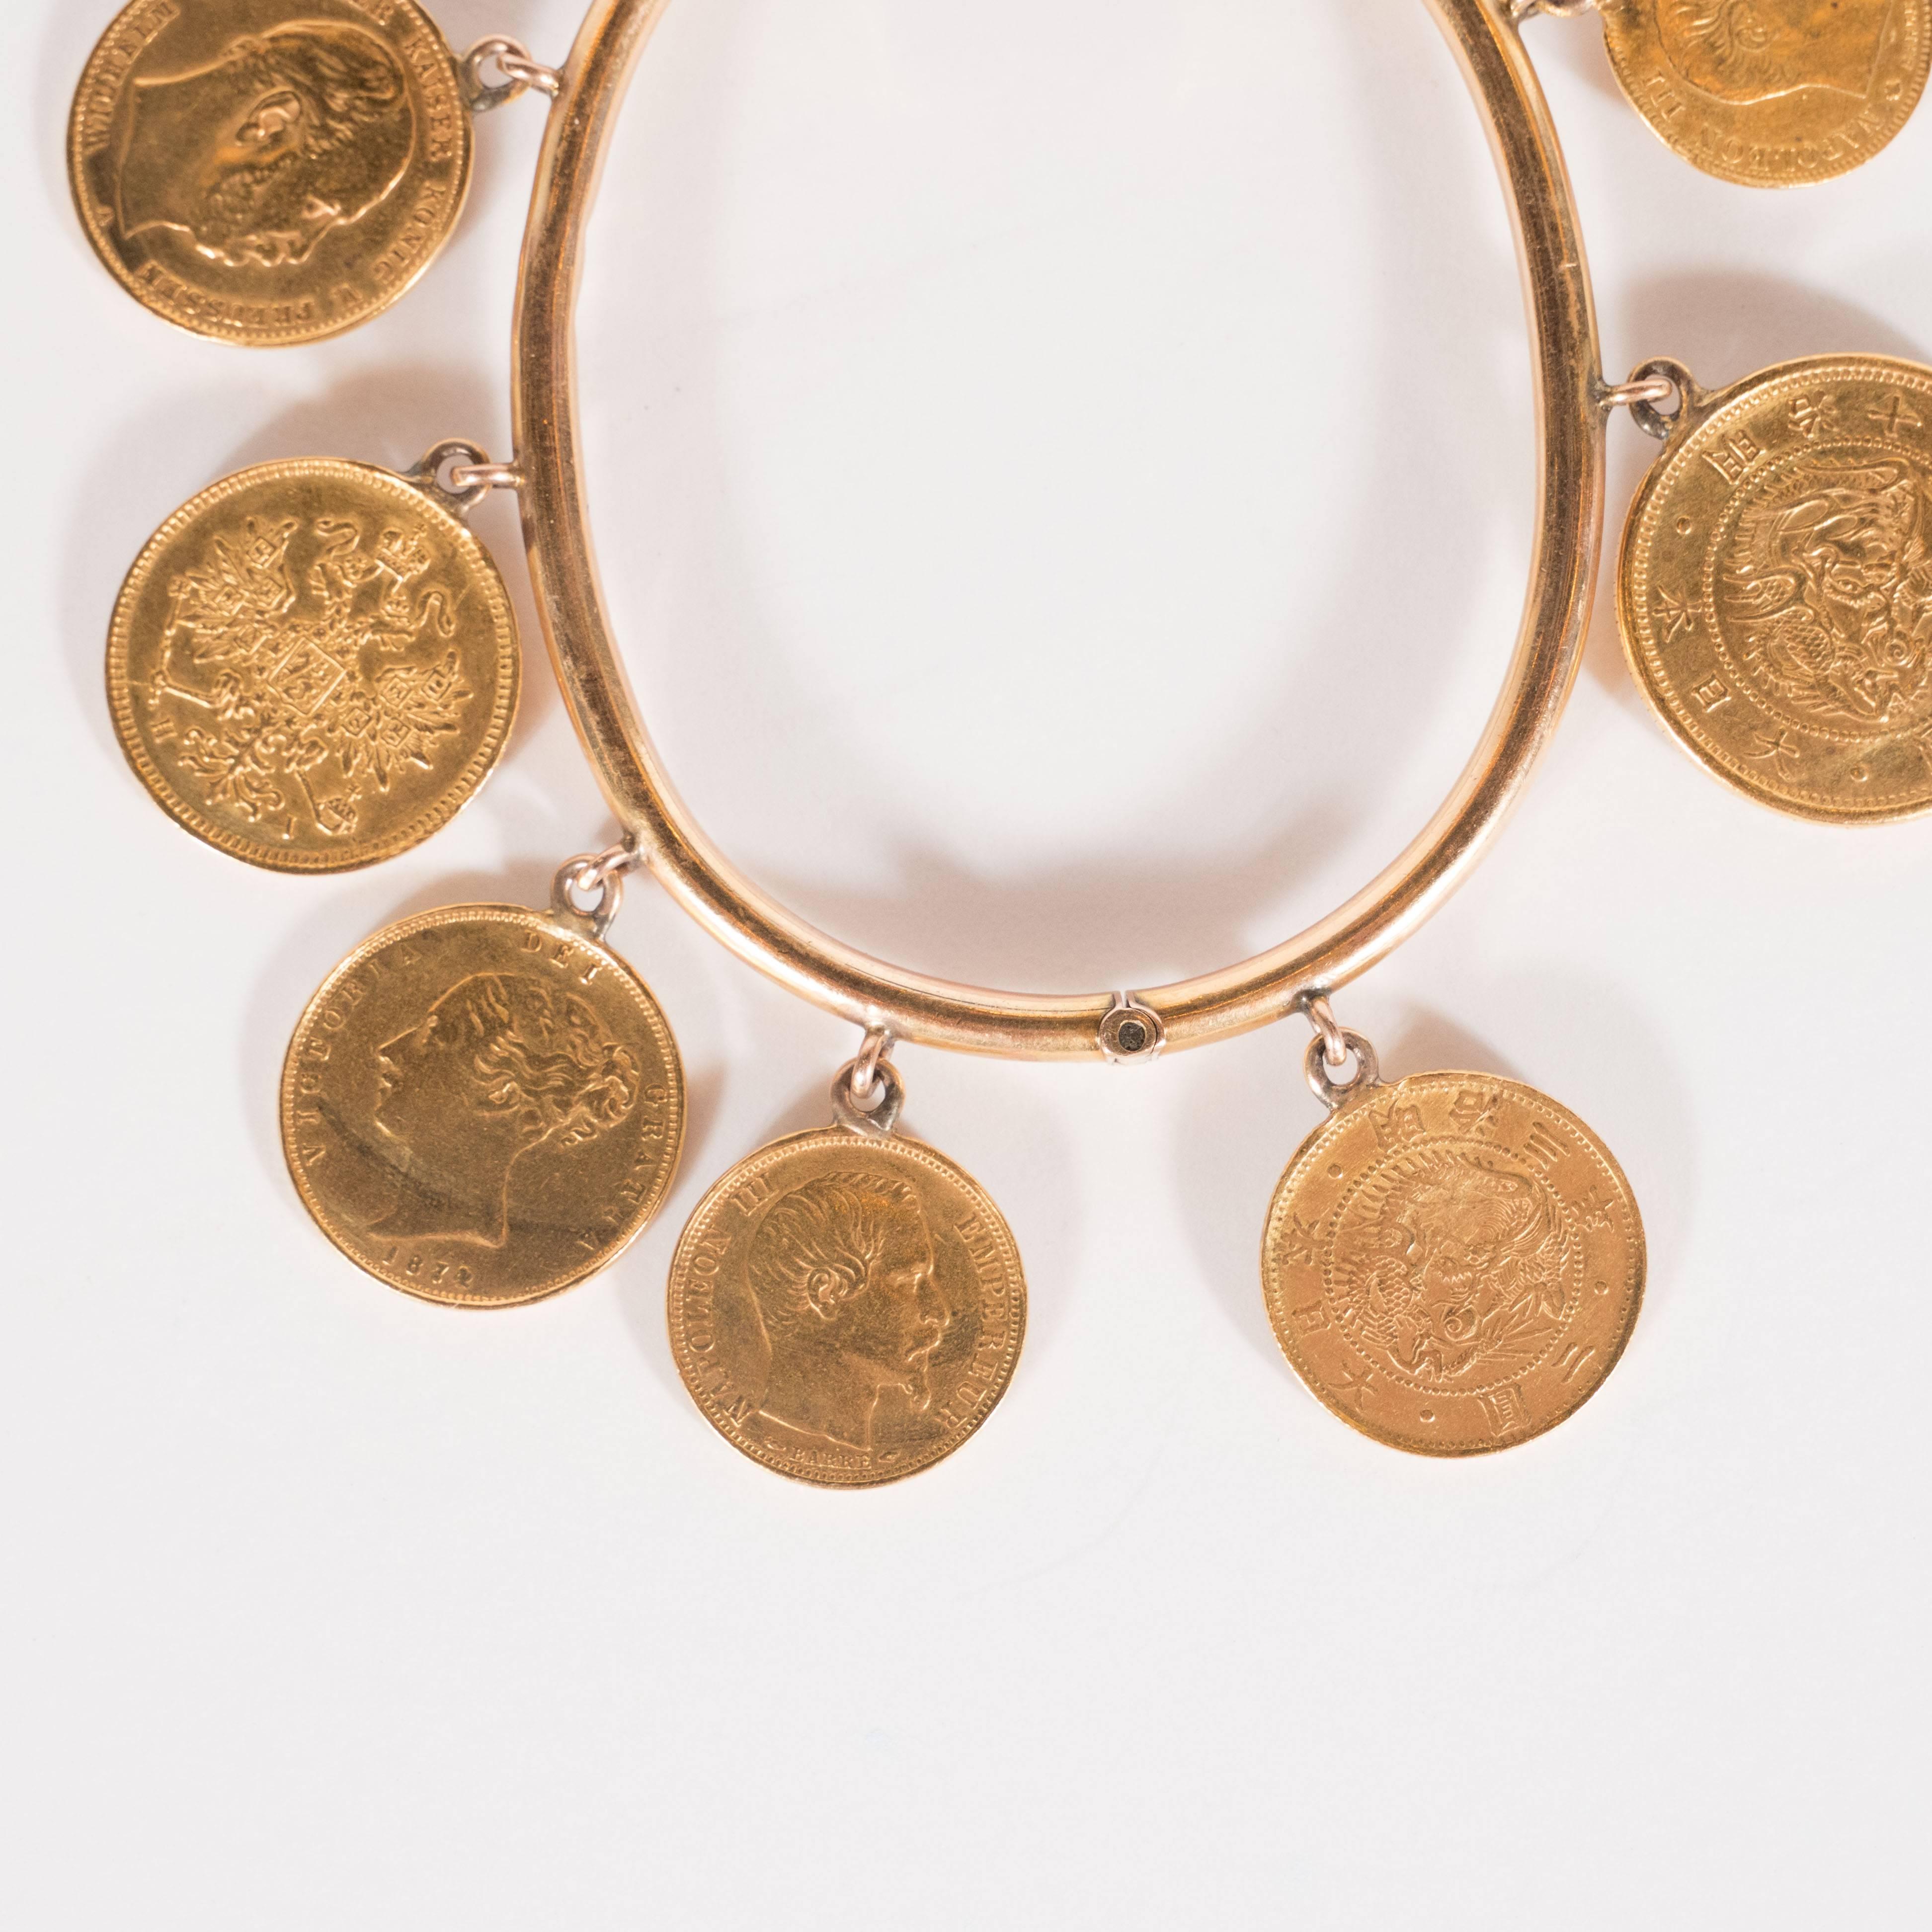 gold coin charm bracelet